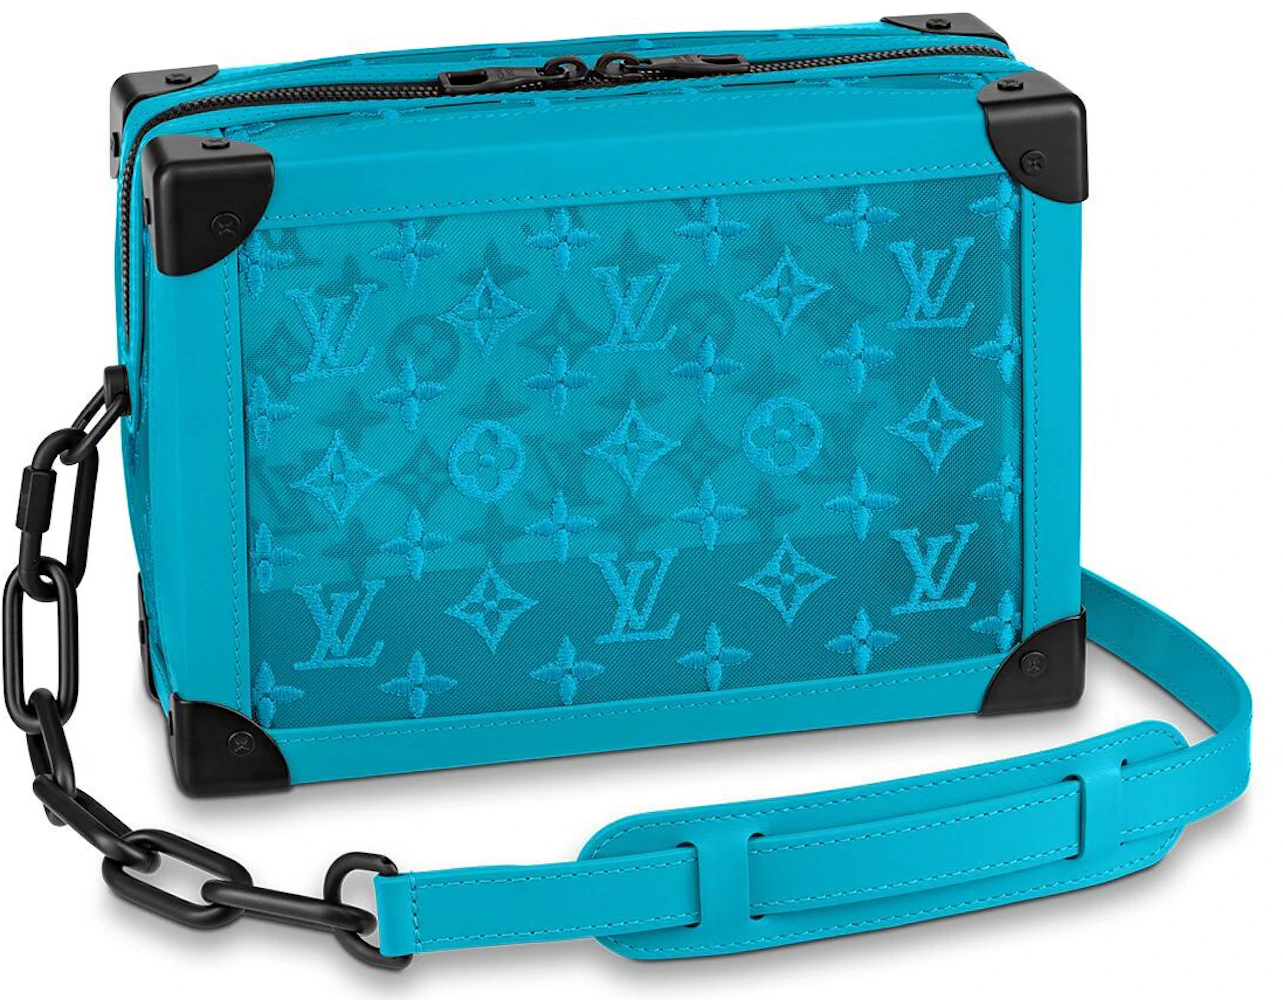 Louis Vuitton Black Monogram Prism Legacy Soft Trunk Bag Louis Vuitton